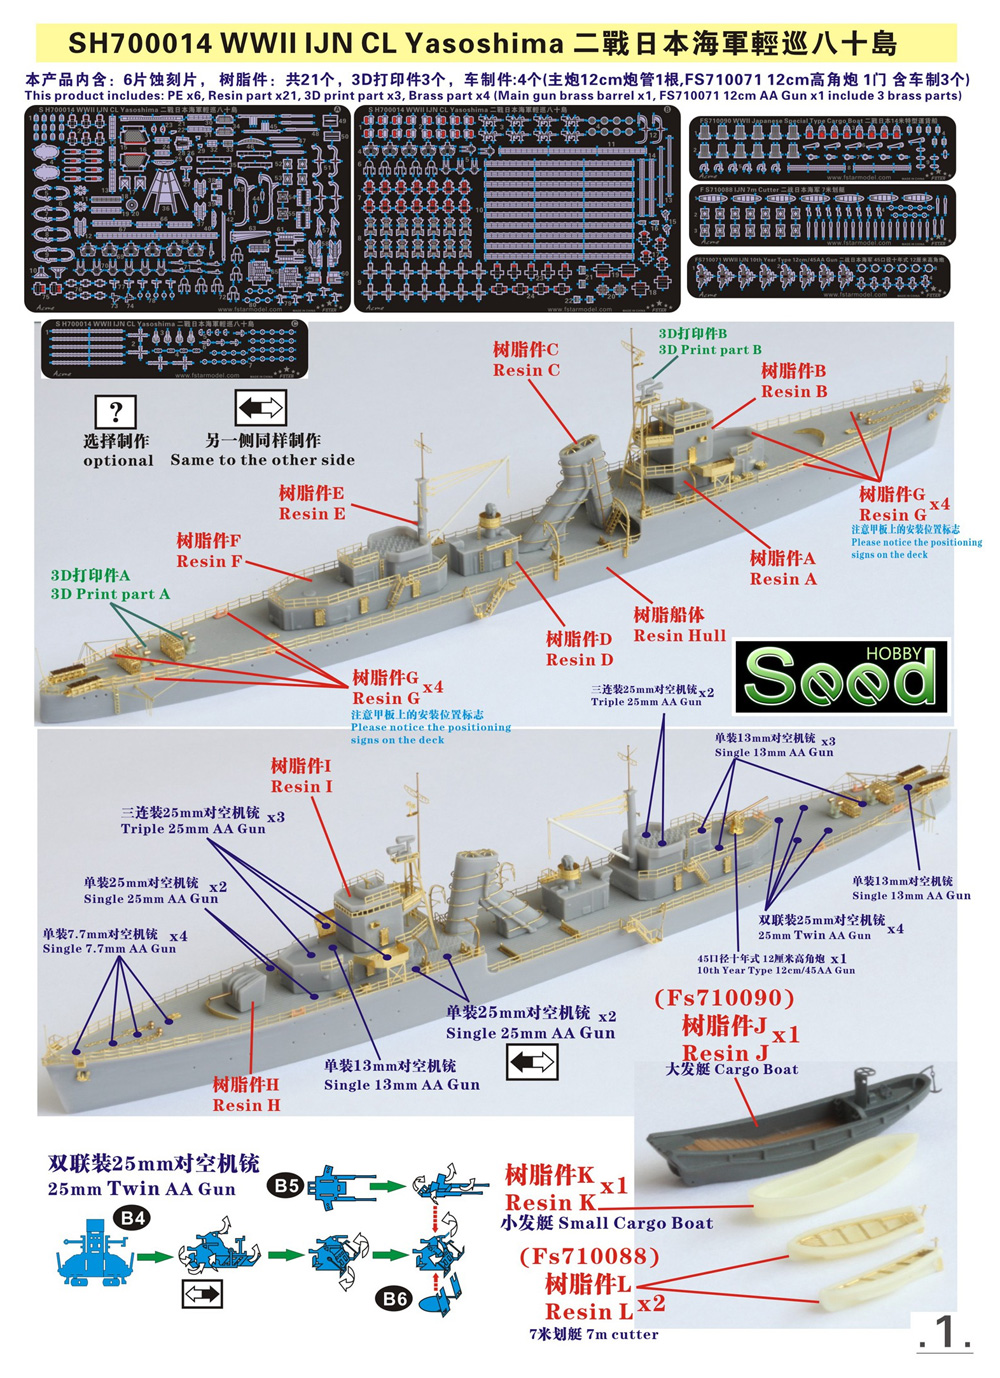 日本海軍 二等巡洋艦 八十島 レジン (Seed HOBBY 1/700 レジンキット No.SH700014) 商品画像_1